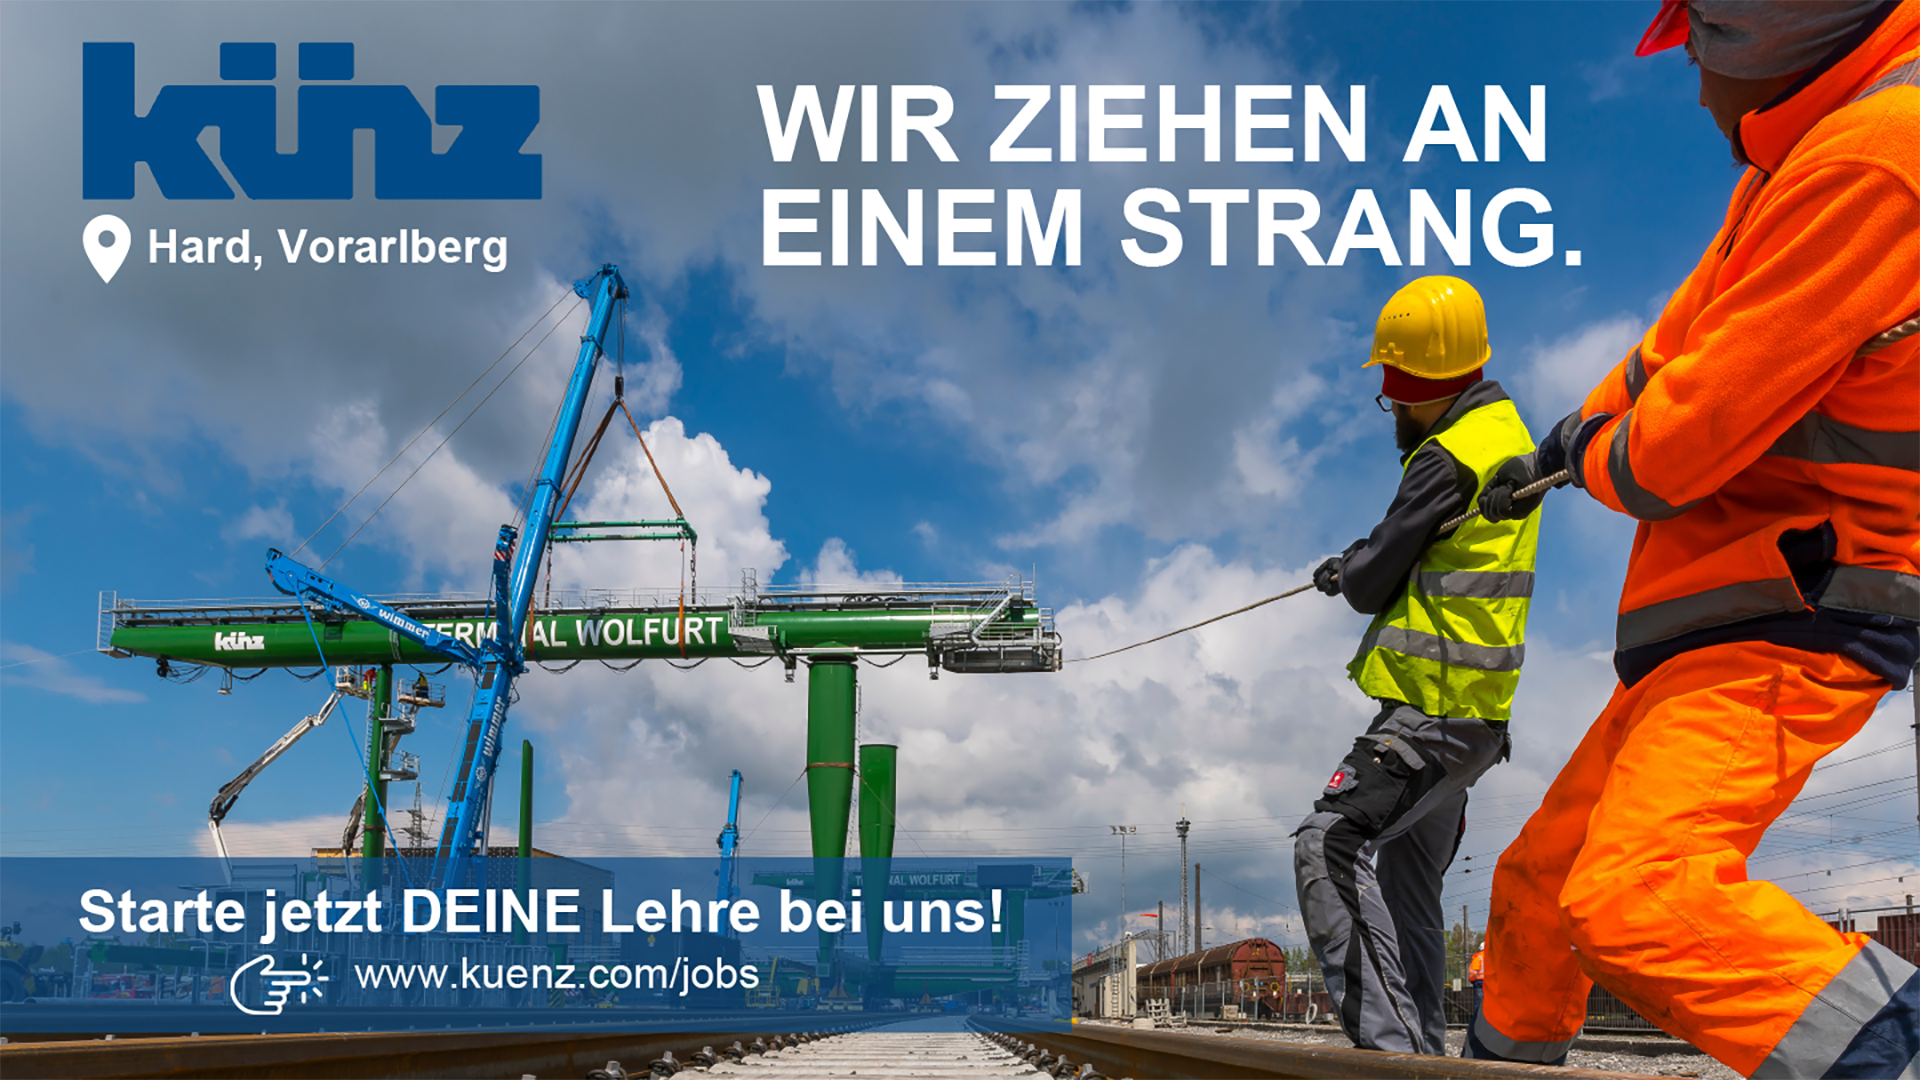 lehre24.at - Künz GmbH